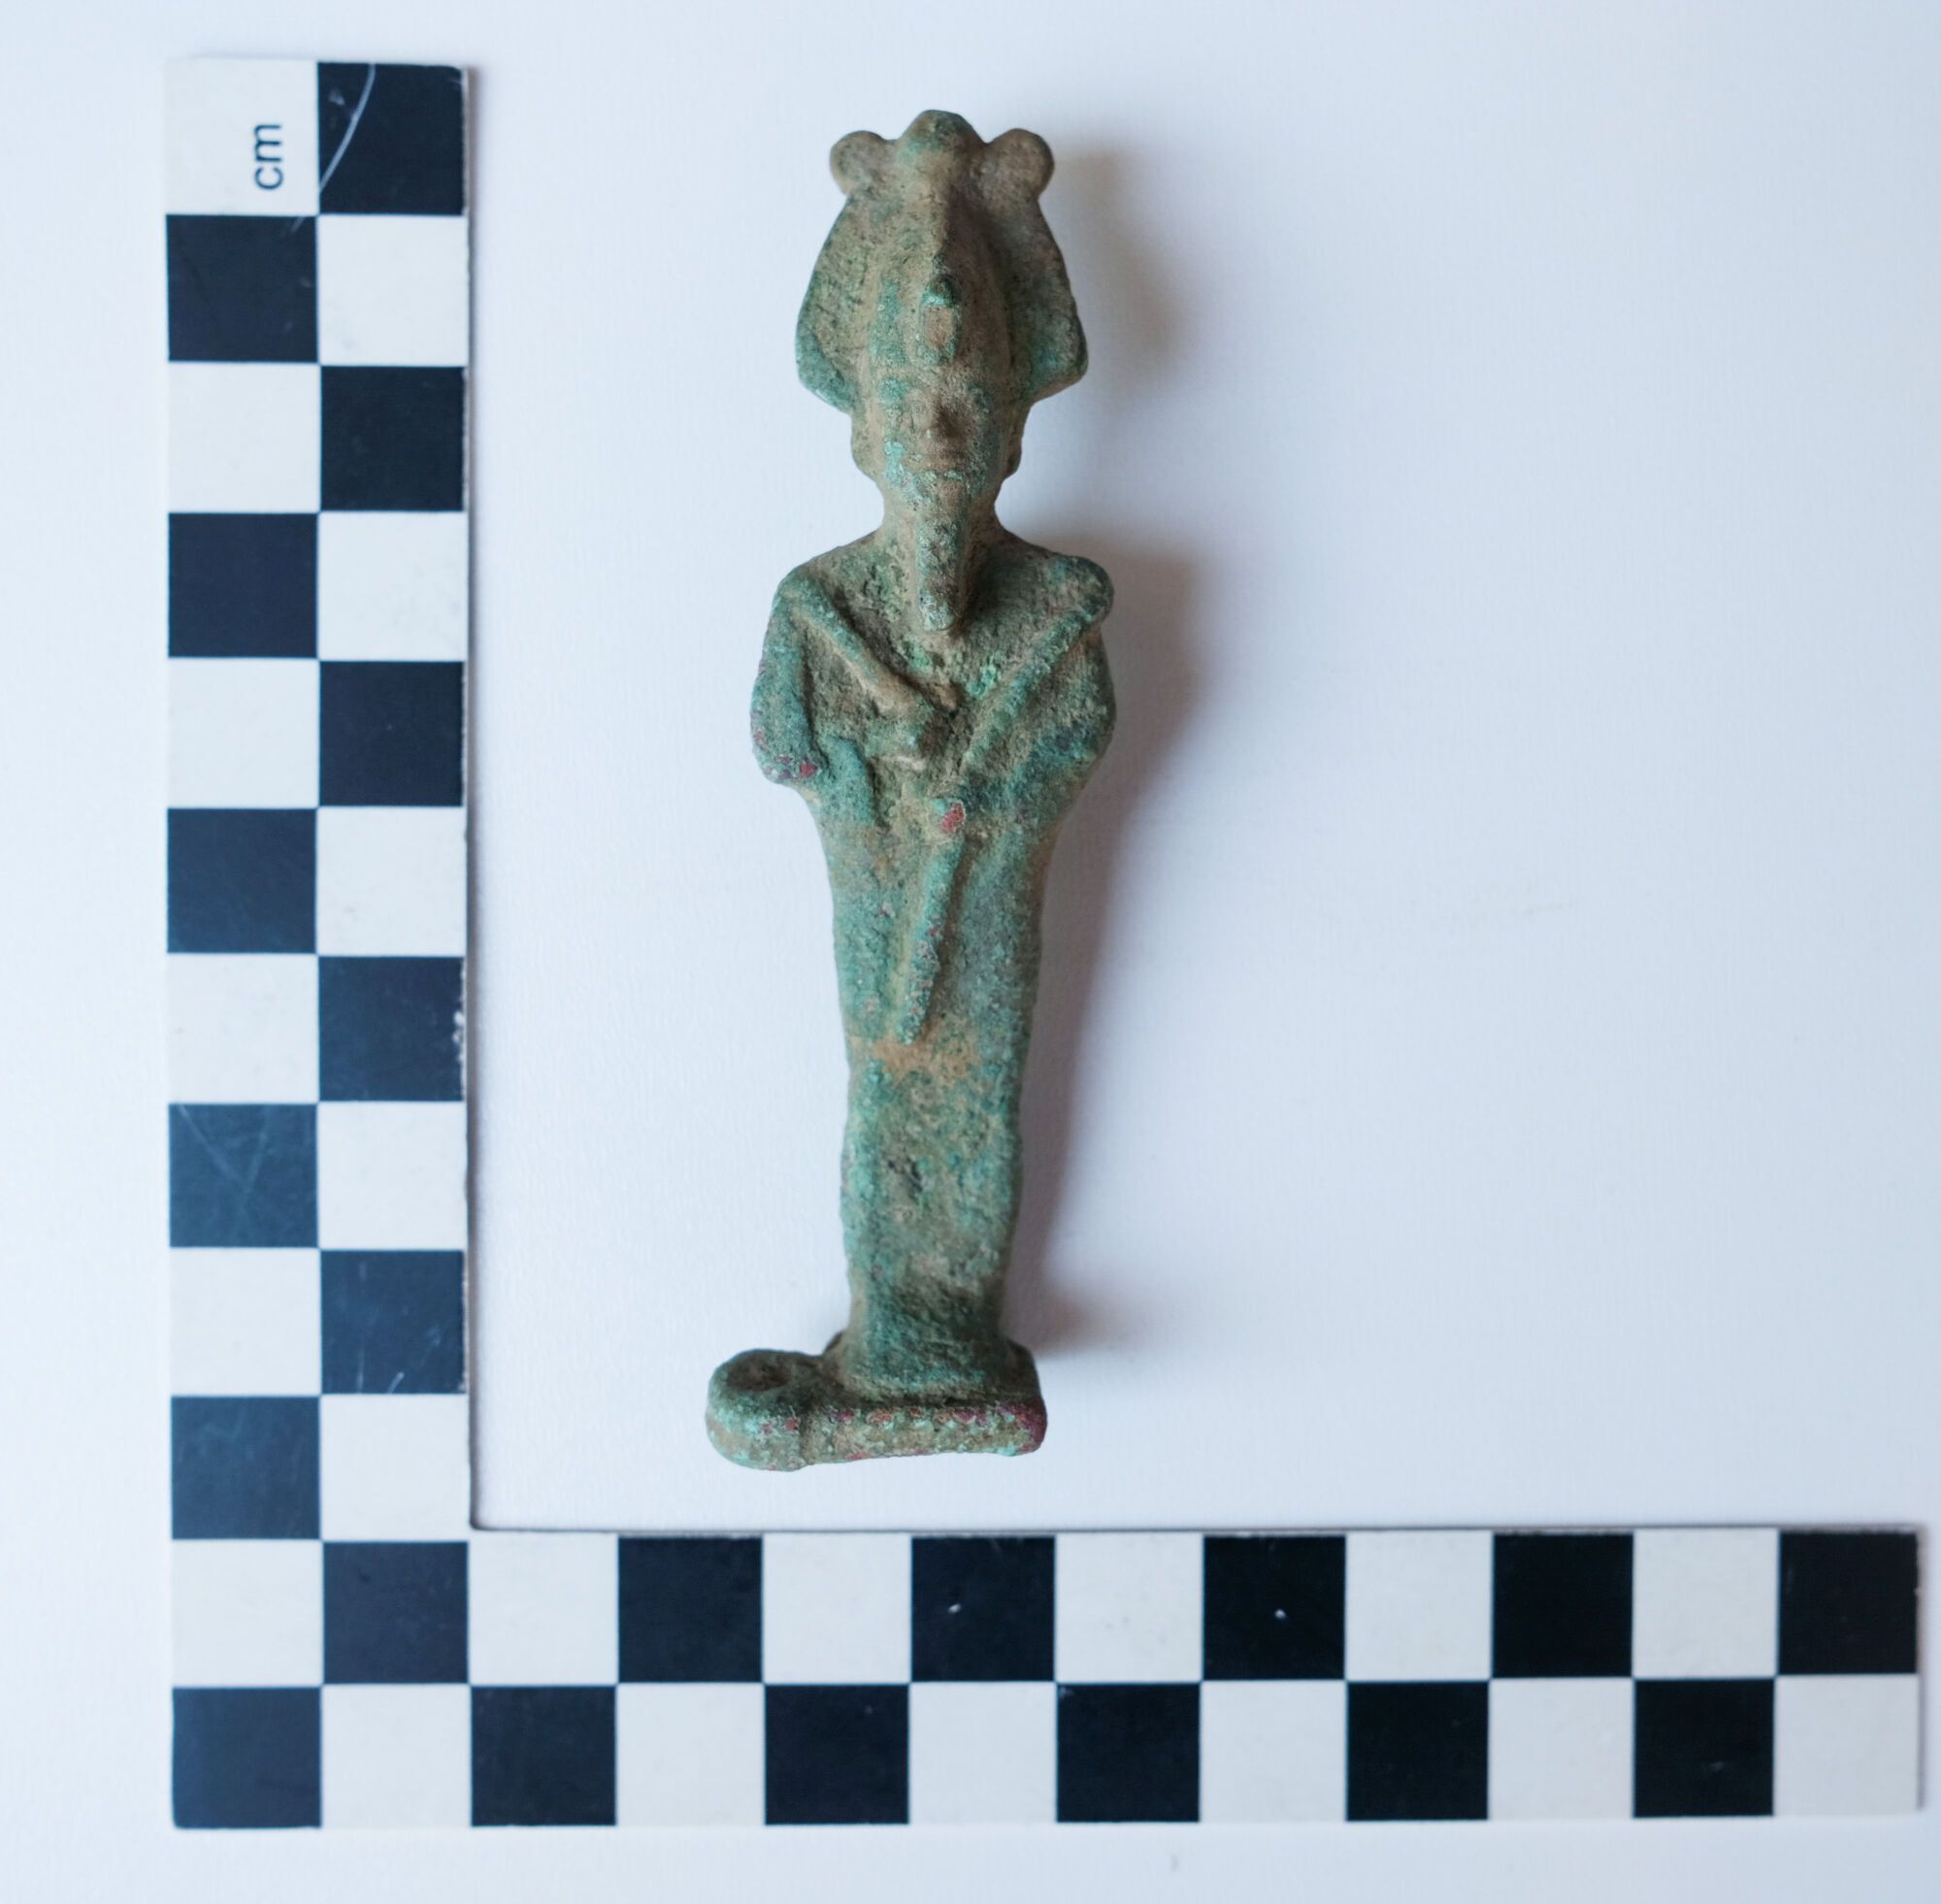 Niezwykłe odkrycie: Dwie tysiącletnie statuetki przedstawiające egipskich i rzymskich bogów znalezione w Polsce (foto)